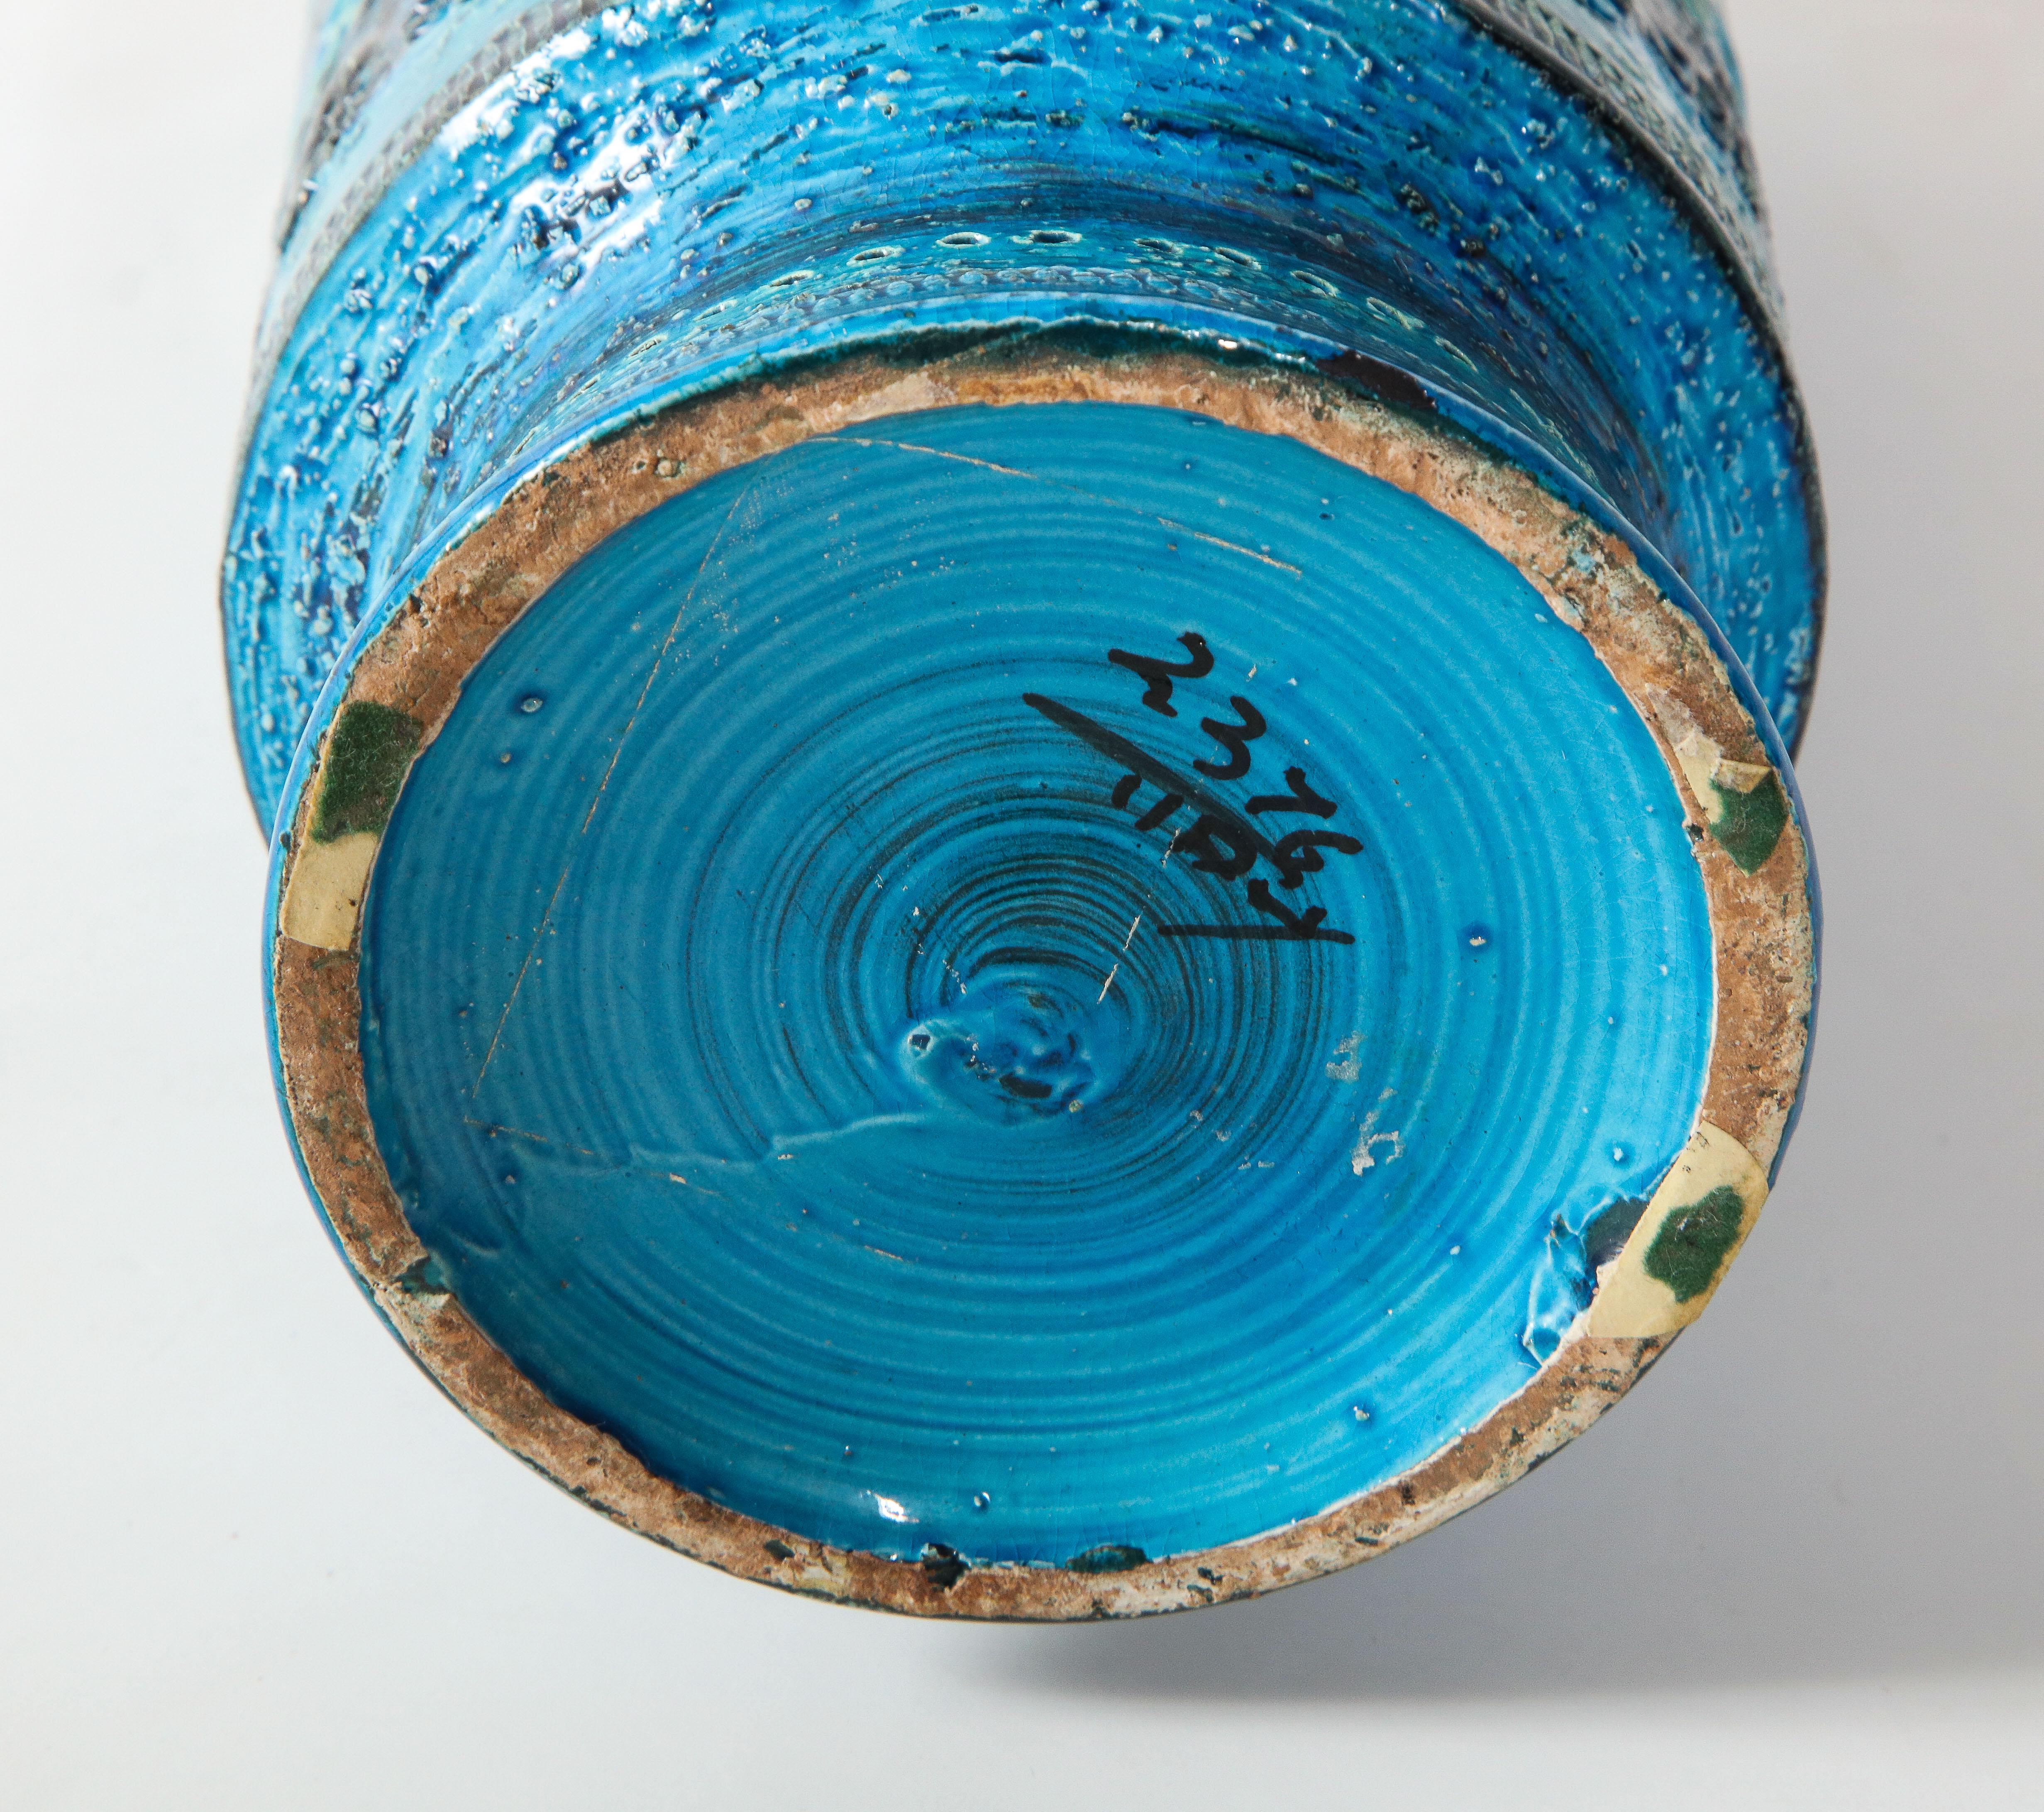 Mid-20th Century Bitossi, Ceramic Vase, Midcentury, Italy, Turquoise, circa 1950